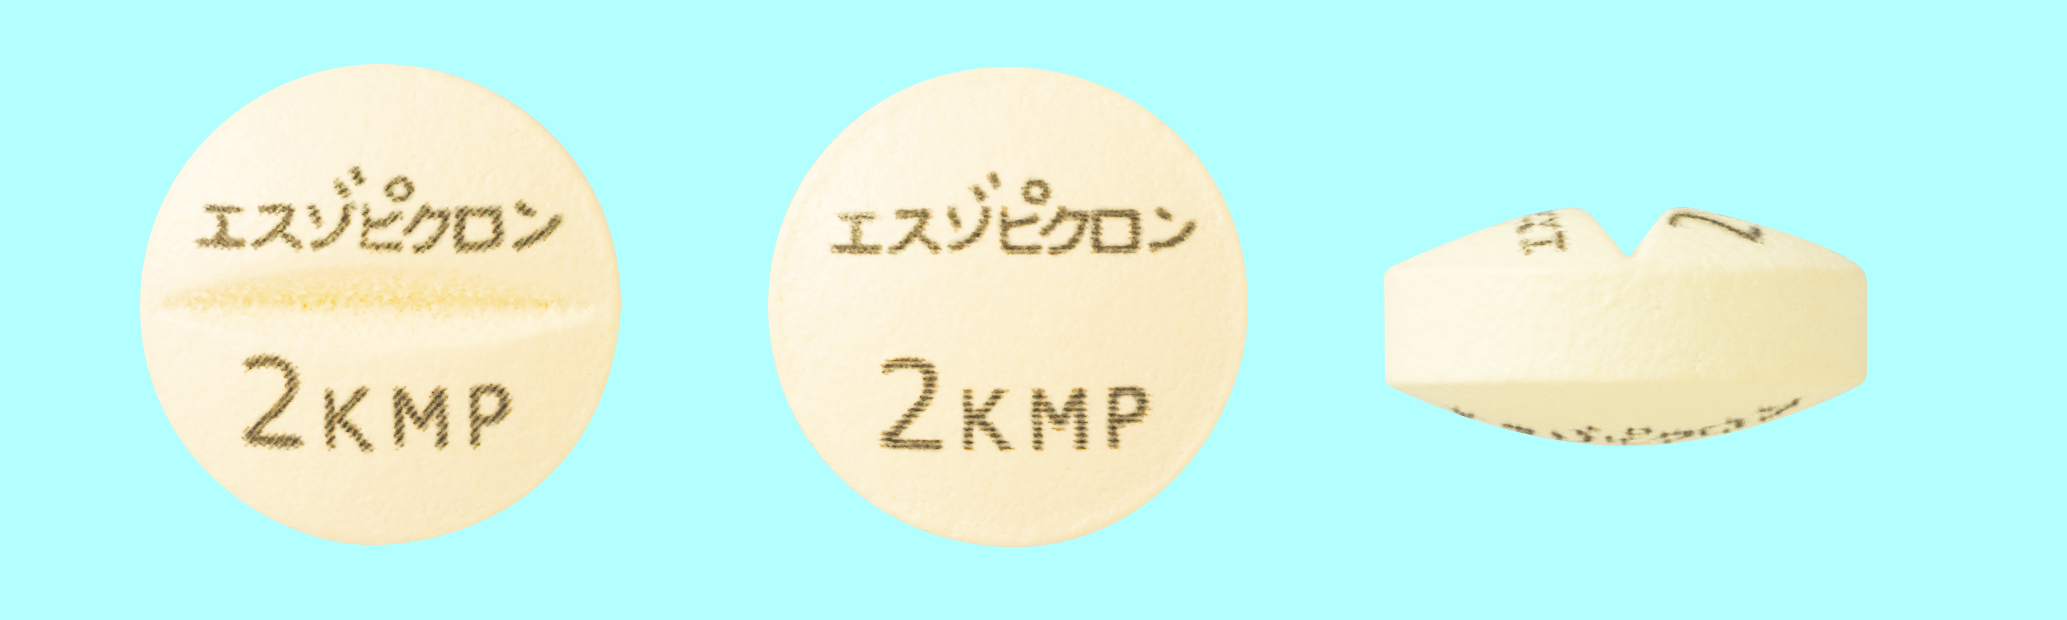 エスゾピクロン錠1mg/2mg/3mg「KMP」